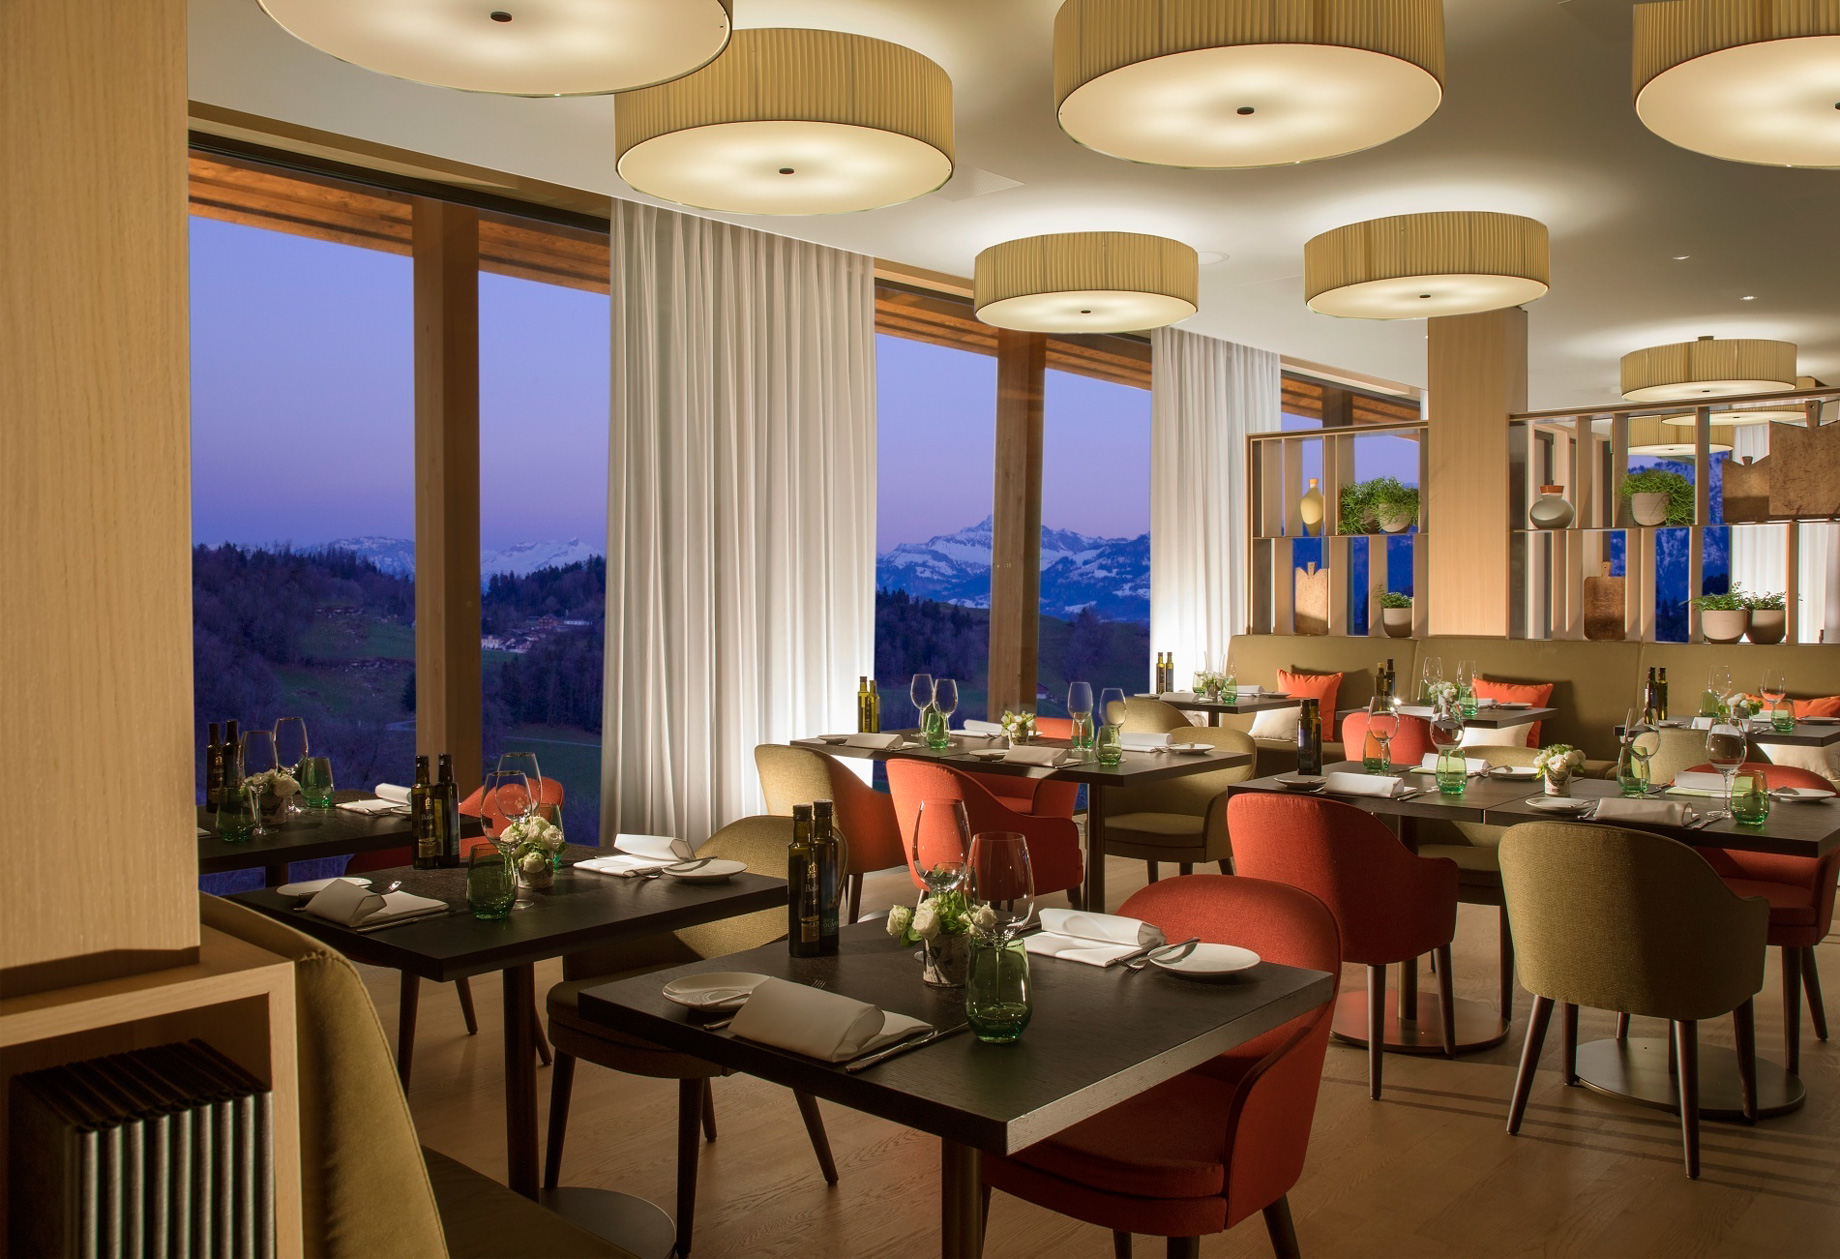 Burgenstock Hotel & Alpine Spa – Obburgen, Switzerland – Verbena Restaurant & Bar Sunset Interior View